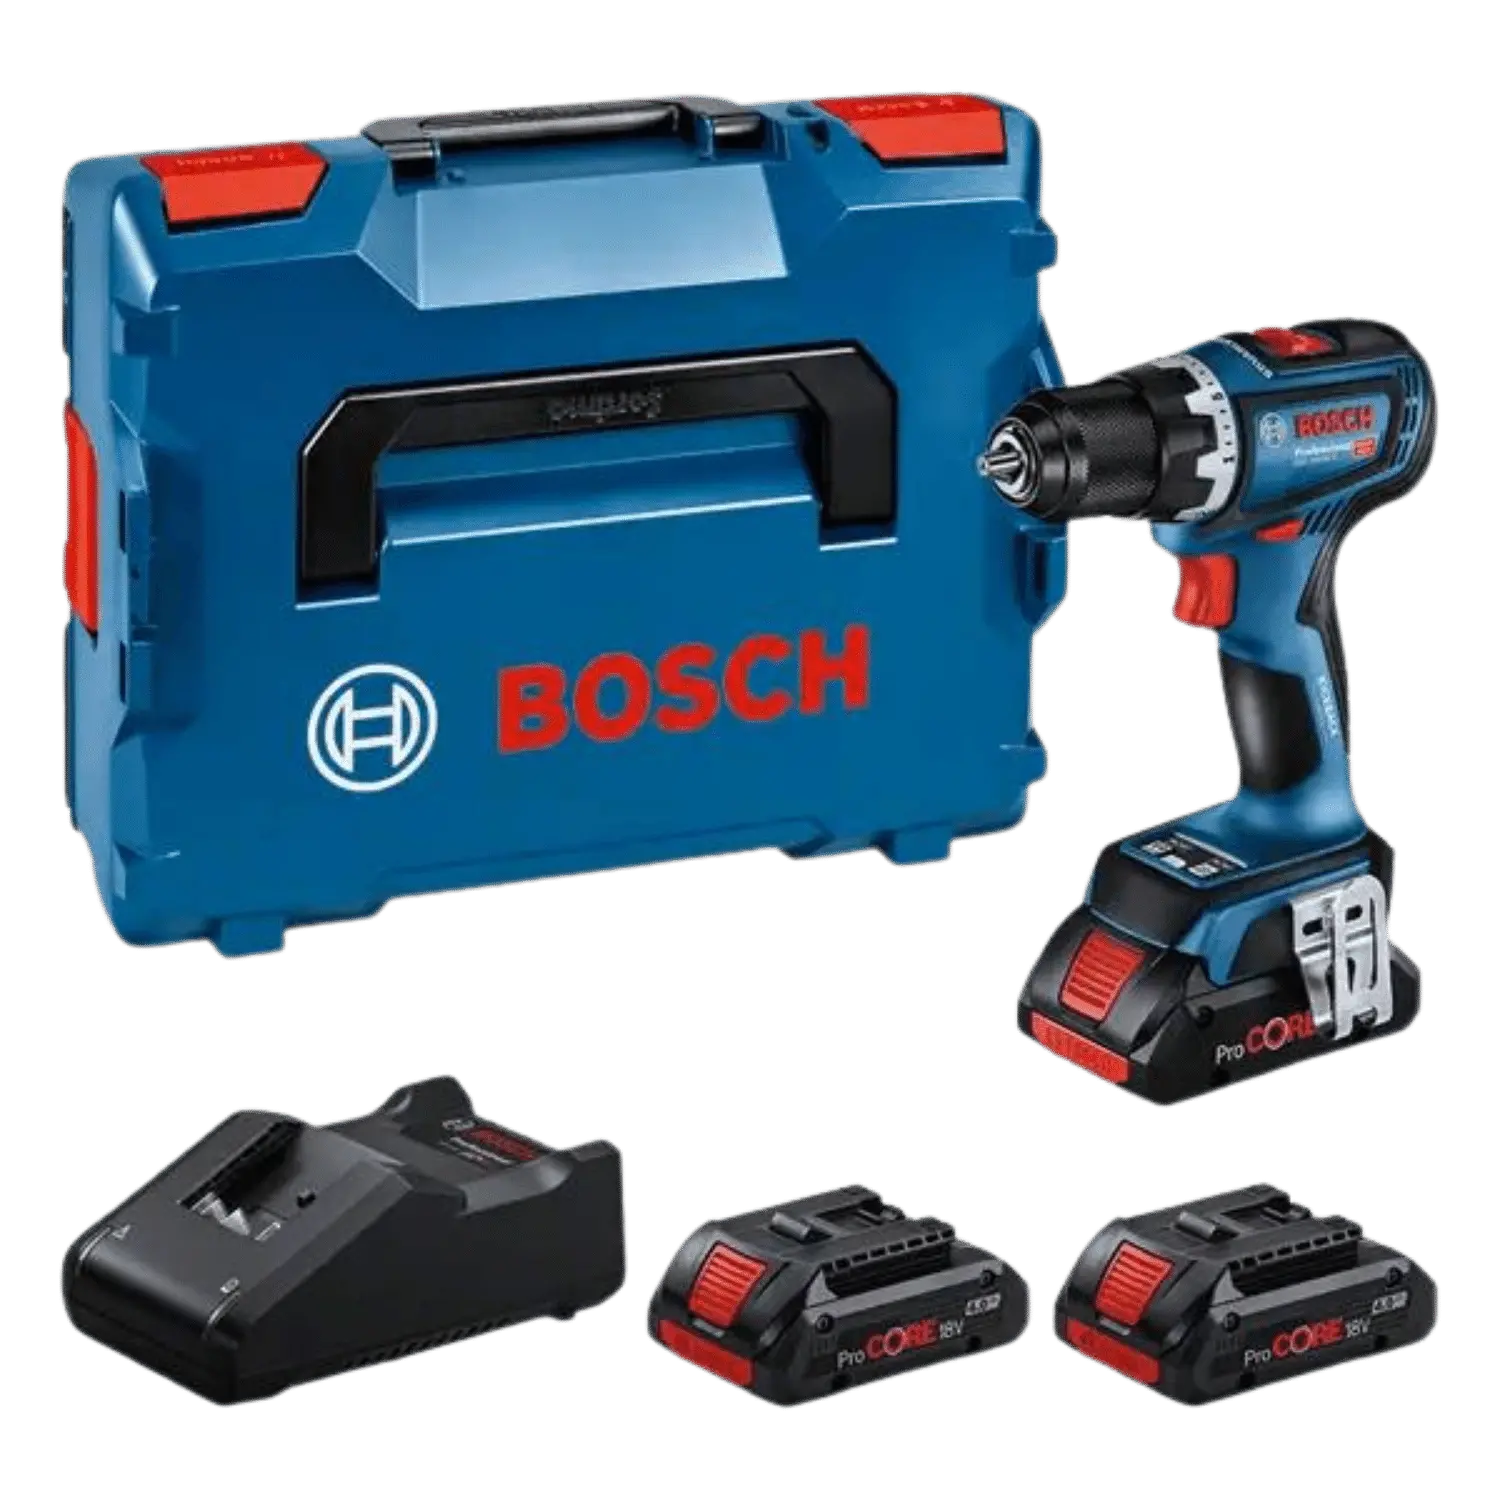 Accu schroef- en boormachine GSR 18V-90 C van Bosch met 3x 4Ah ProCore accu's. en snellader.